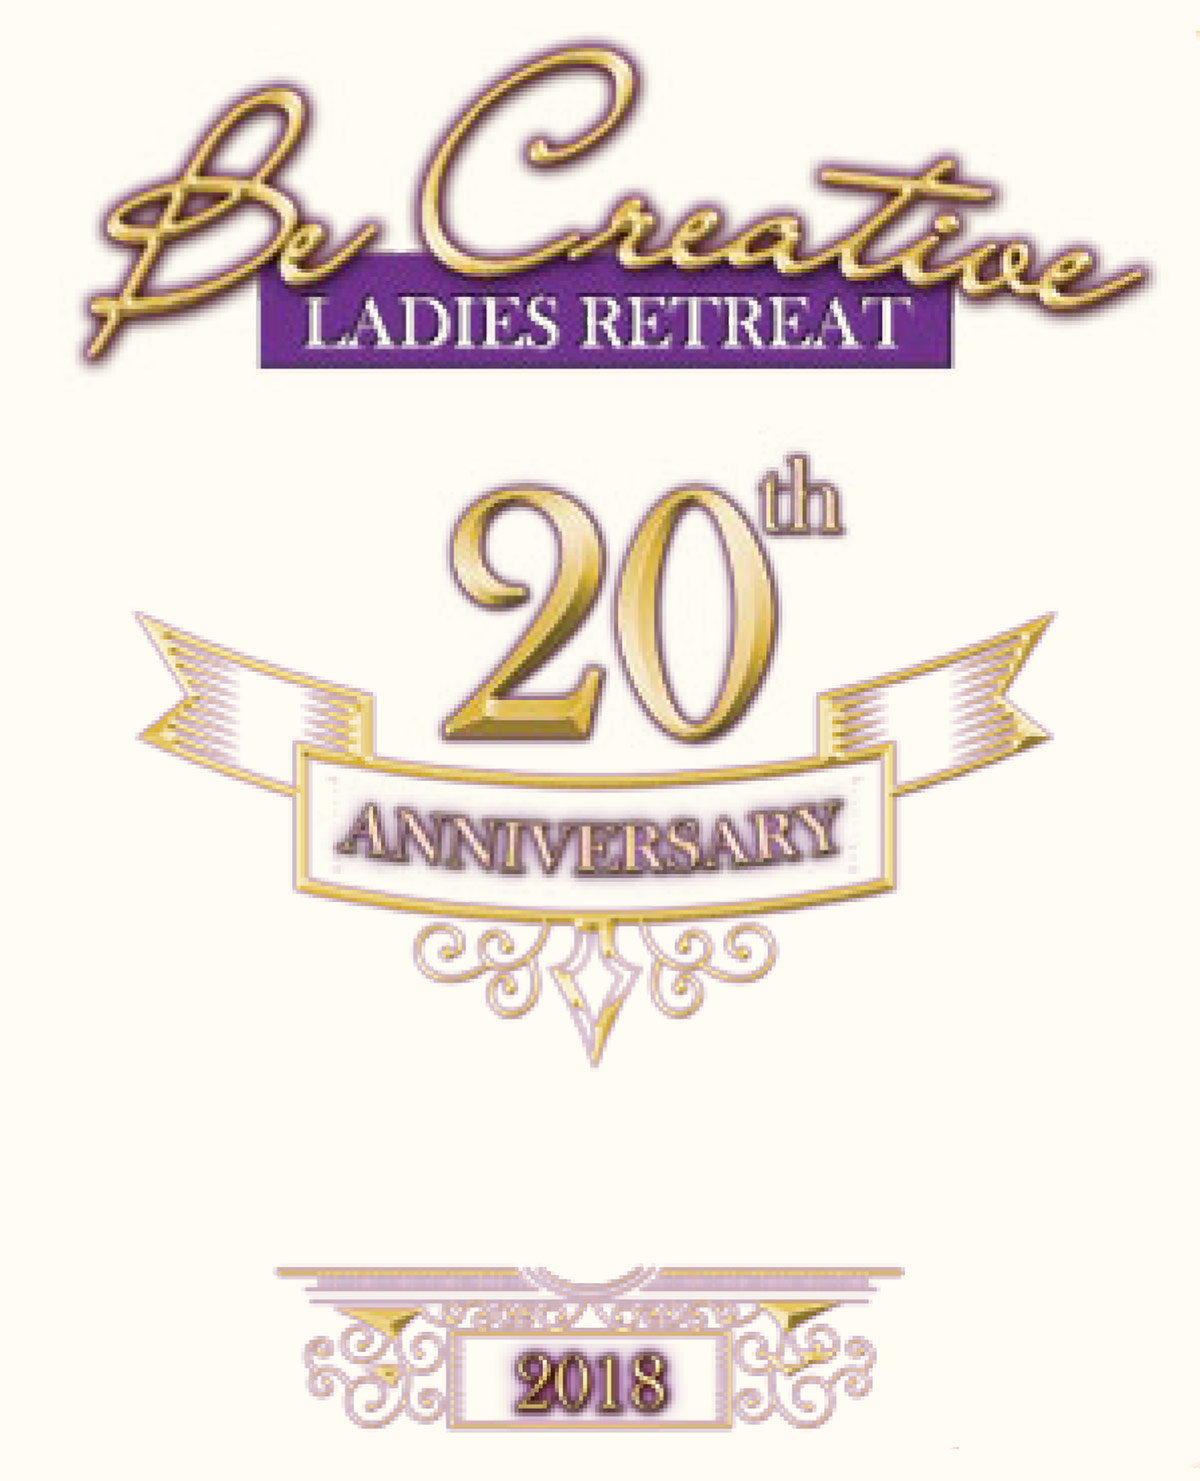 The 2018 Be Creative Ladies Retreat